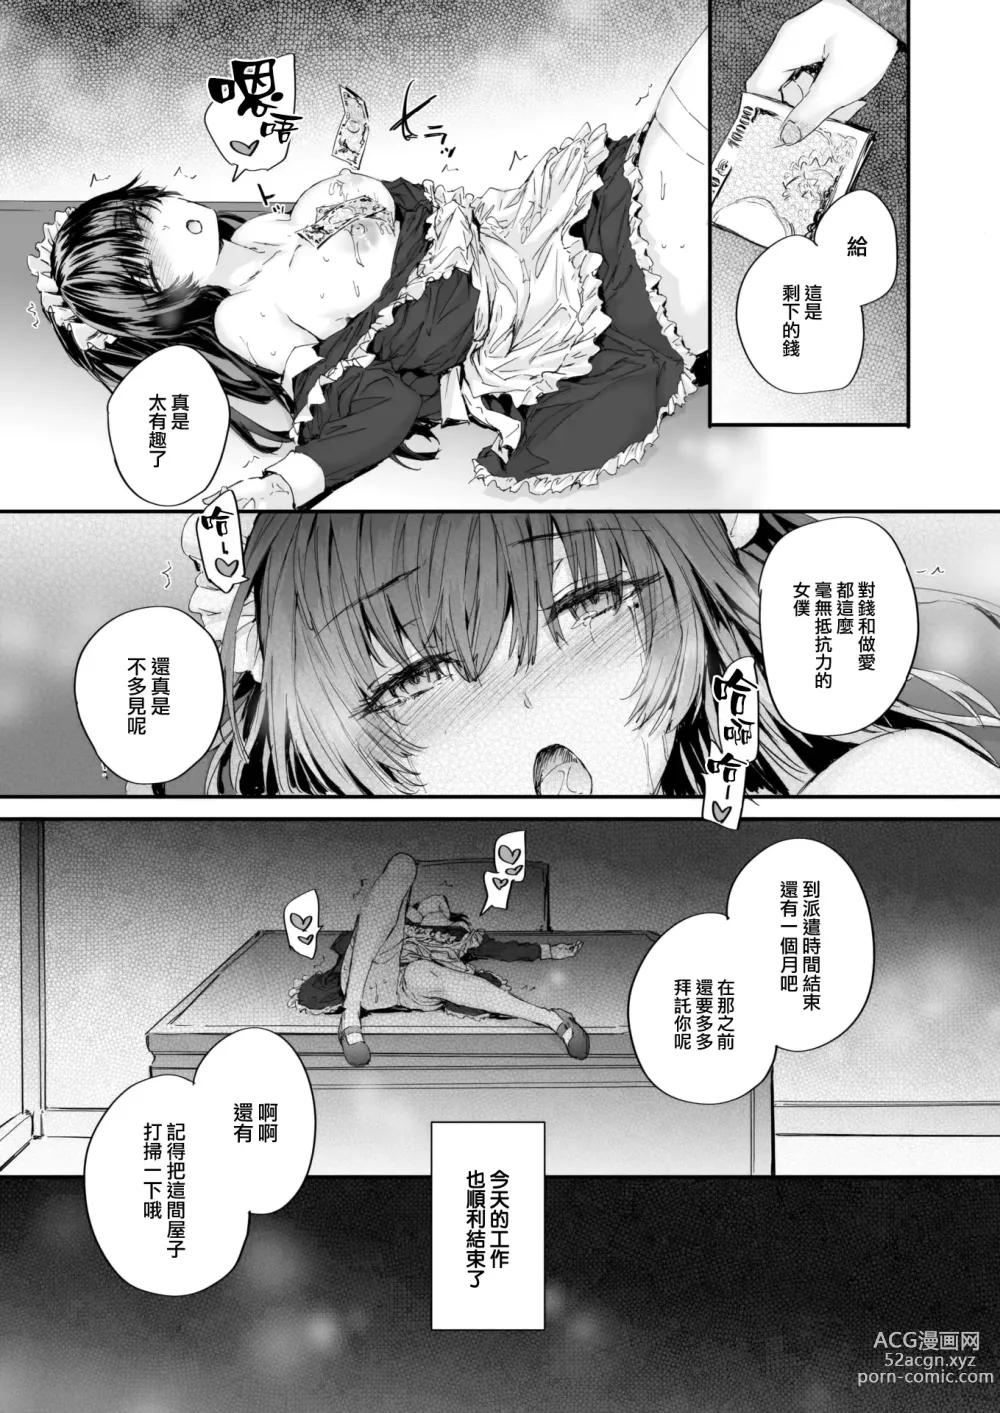 Page 22 of manga Haken Maid no Tomotakasan